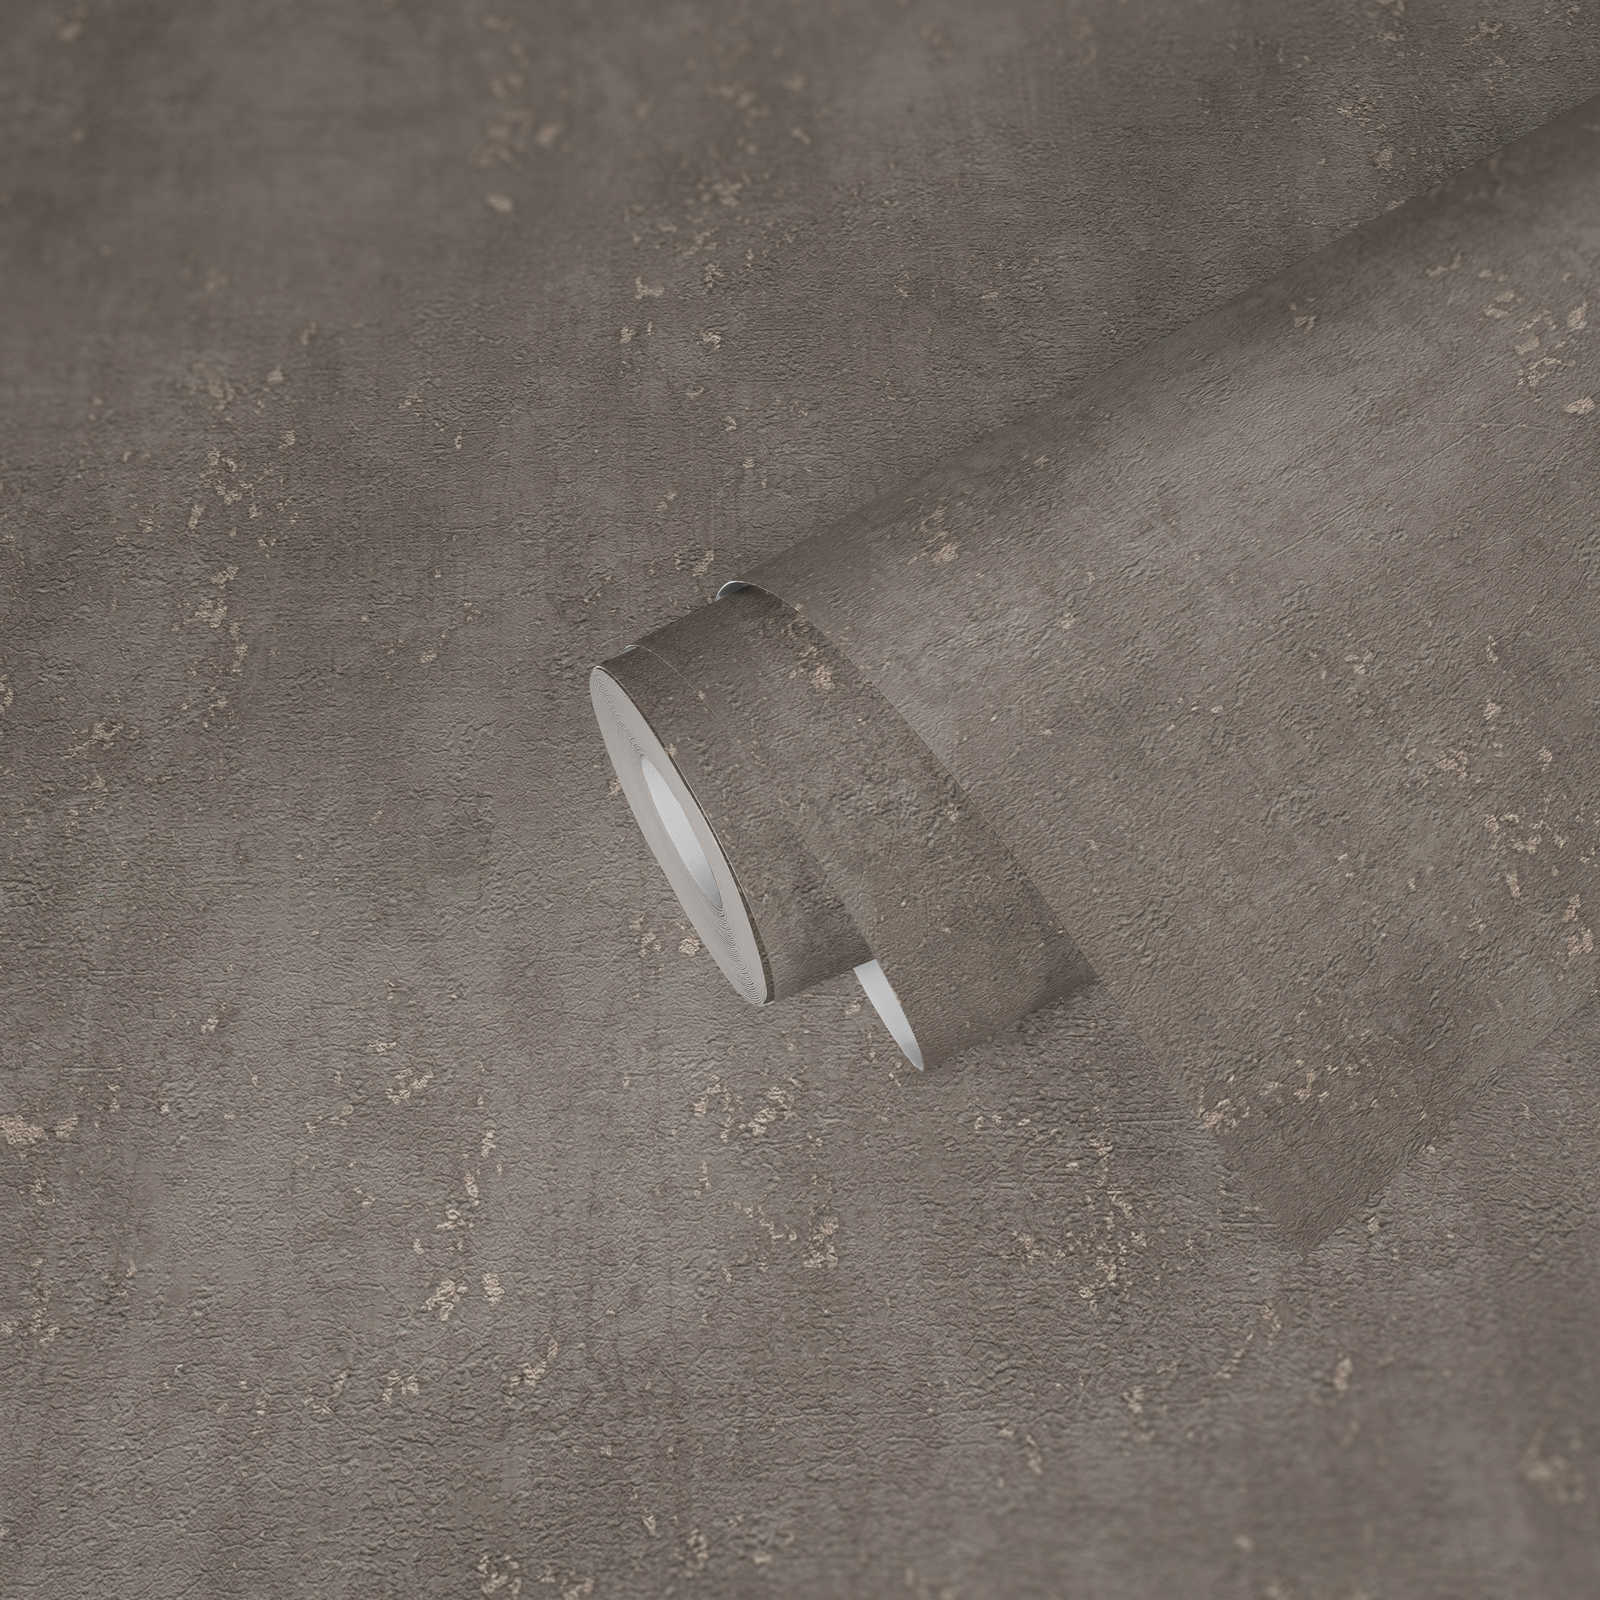             papel pintado marrón claro aspecto de yeso con acento metálico - marrón
        